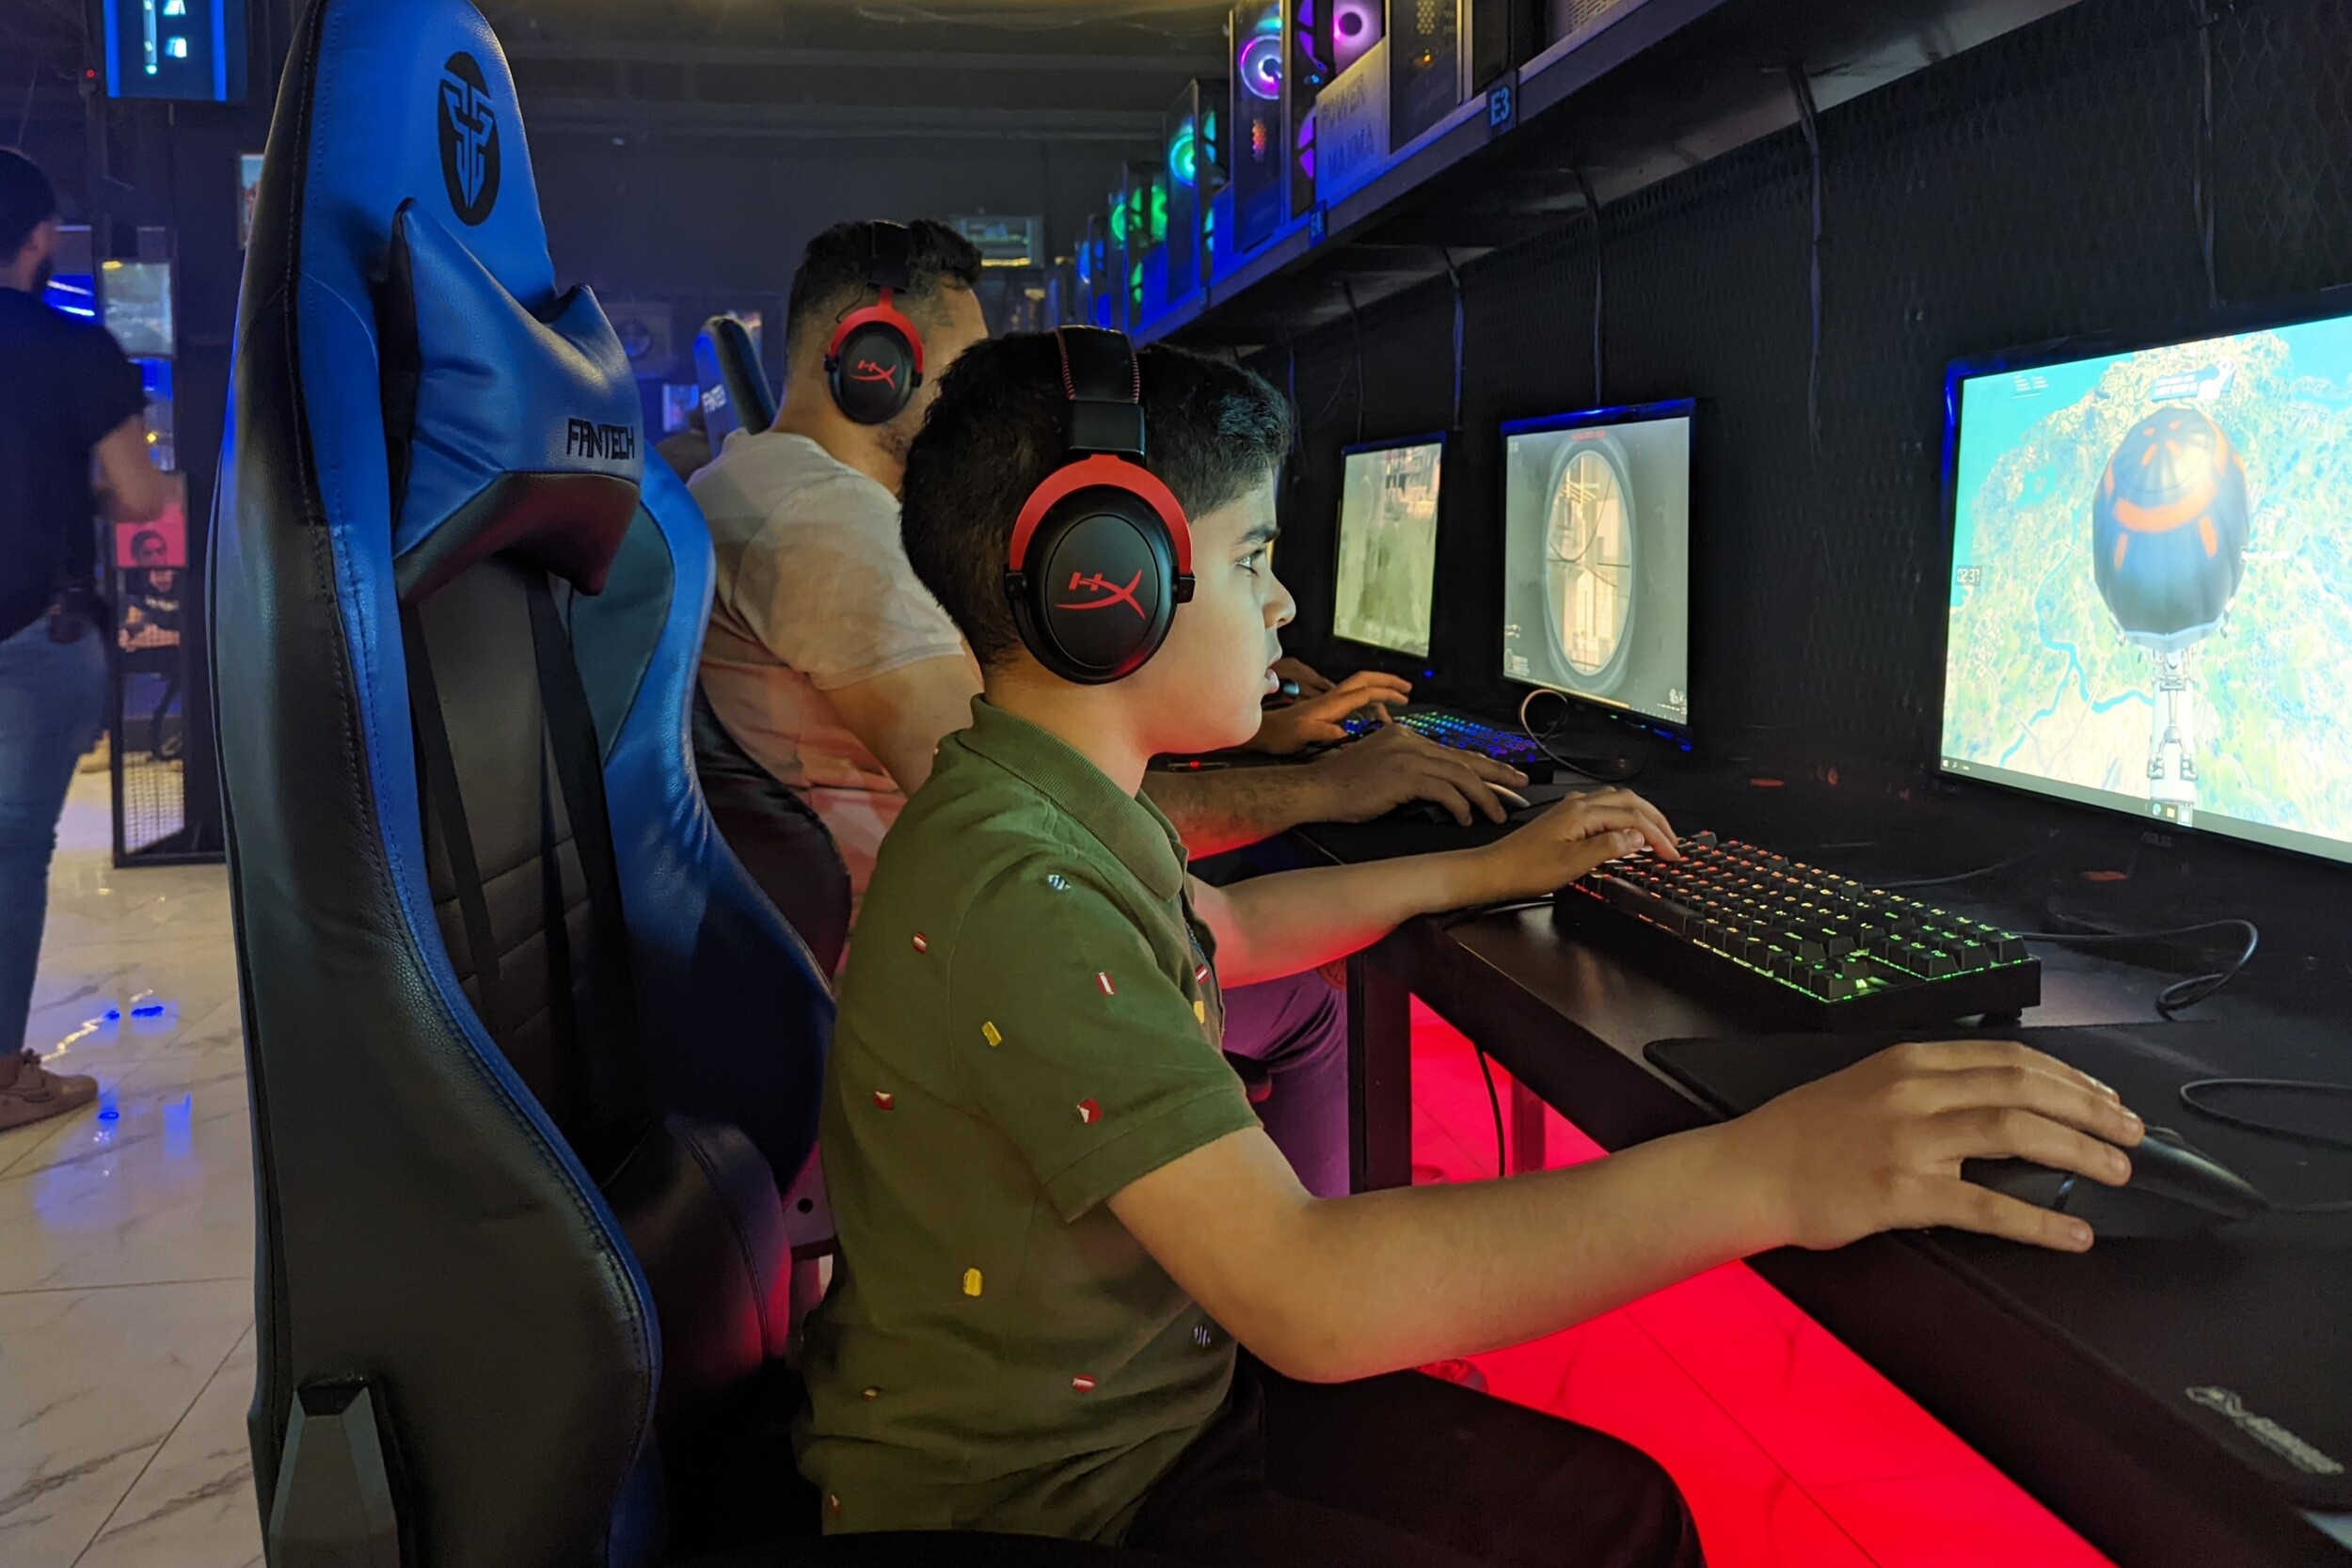 Addiction, casinos en ligne illégaux : des milliers de jeunes paient très cher leur passion pour Counter-Strike